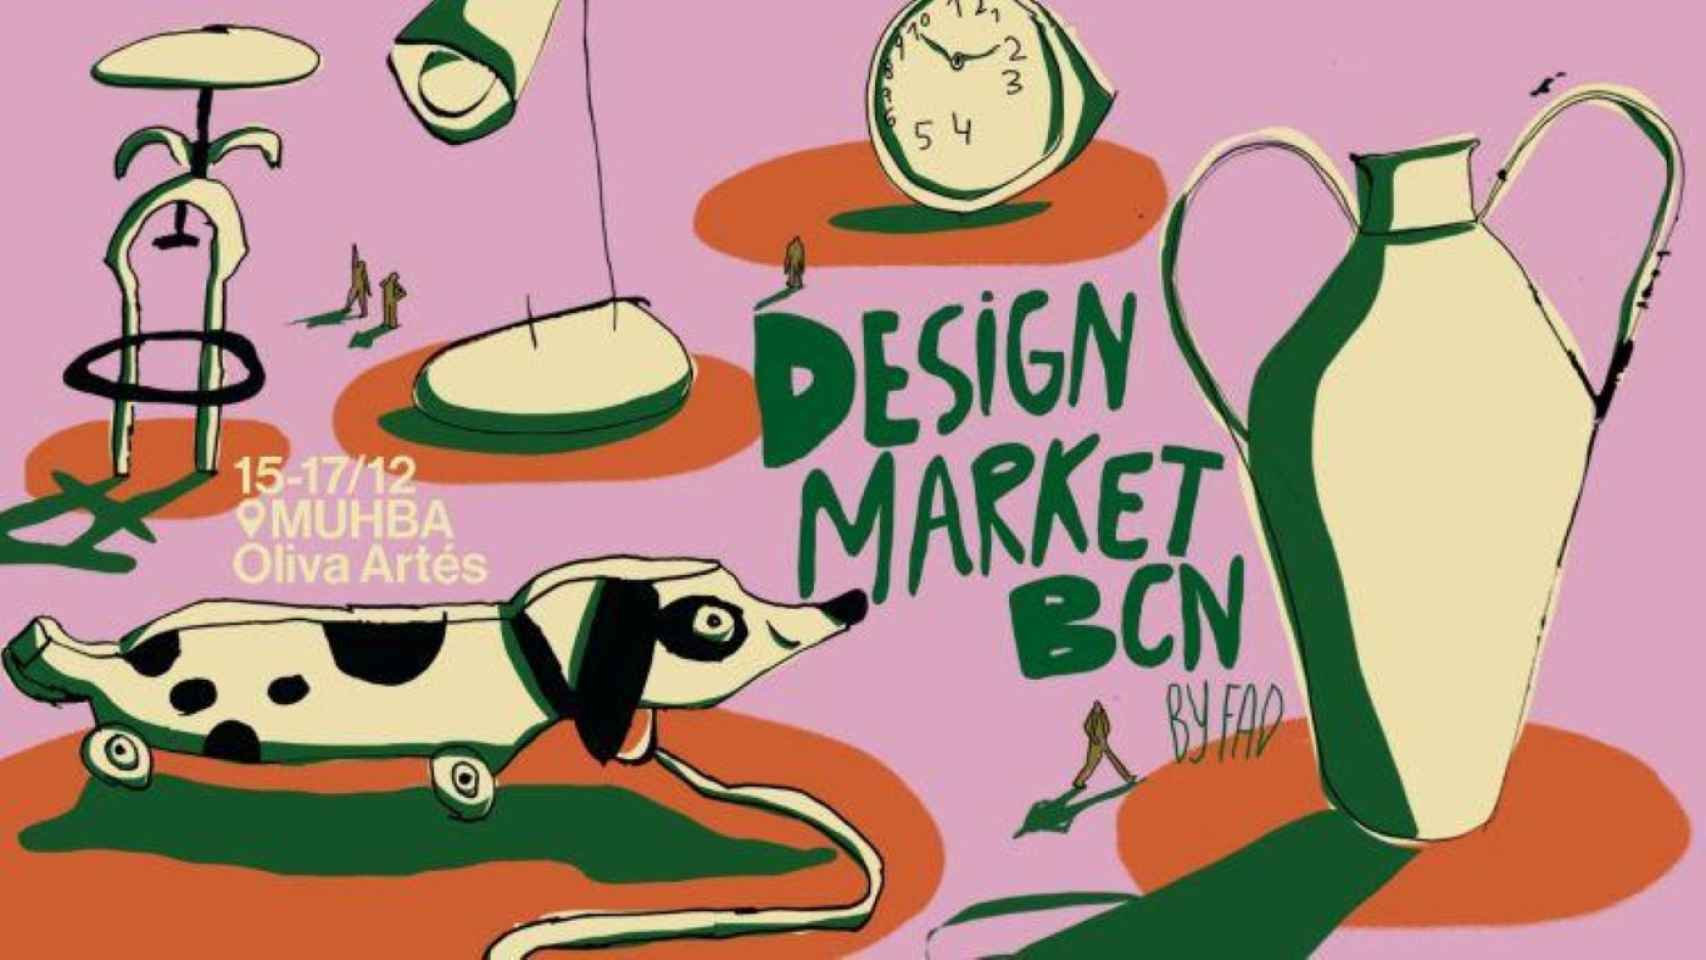 Cartel publicitario del Design Market